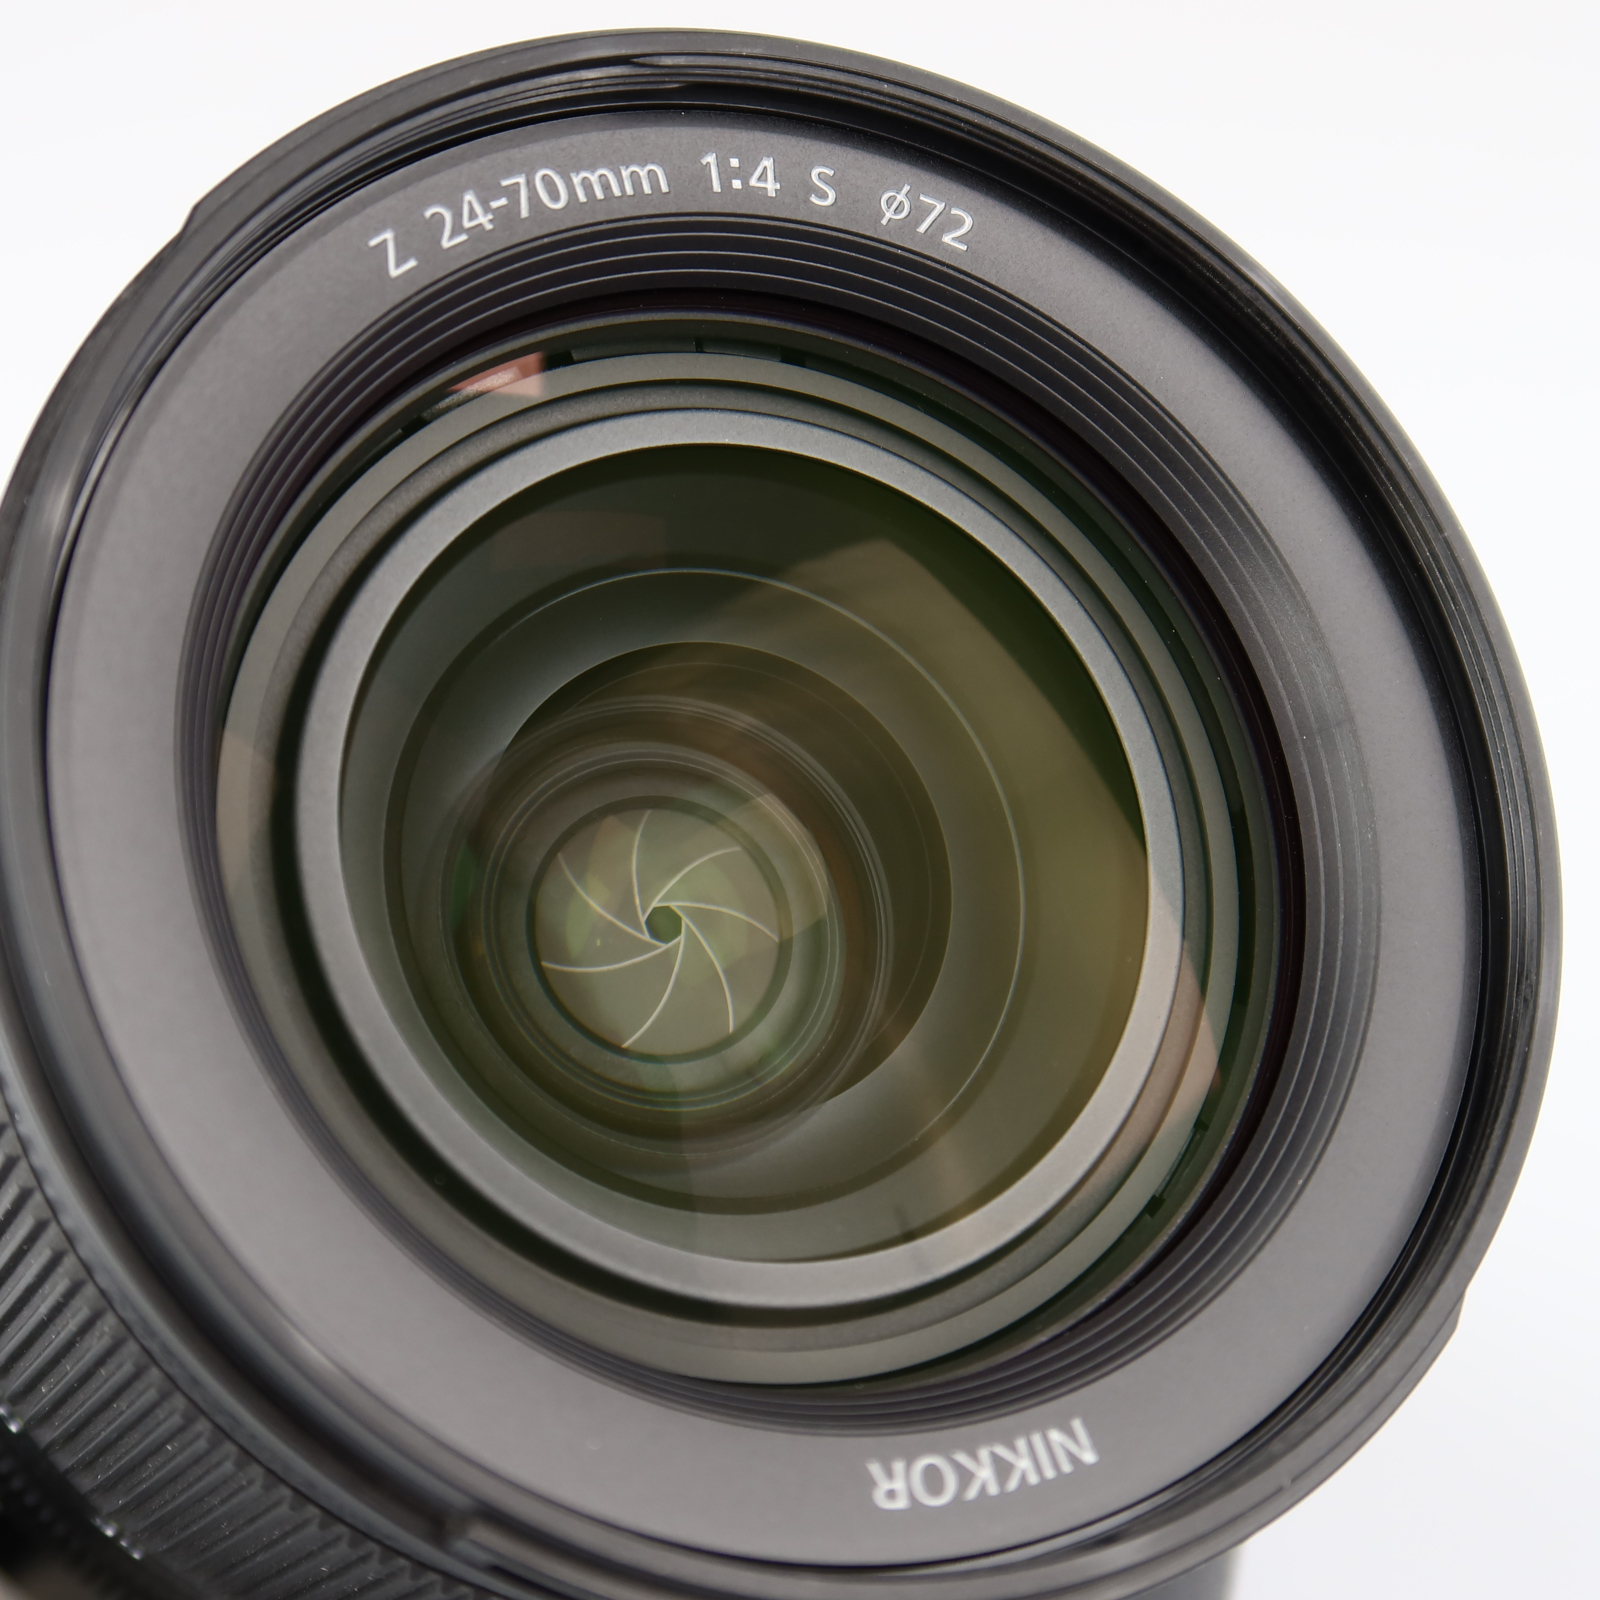 (Myyty) Nikon Nikkor Z 24-70mm f/4 S (käytetty) 